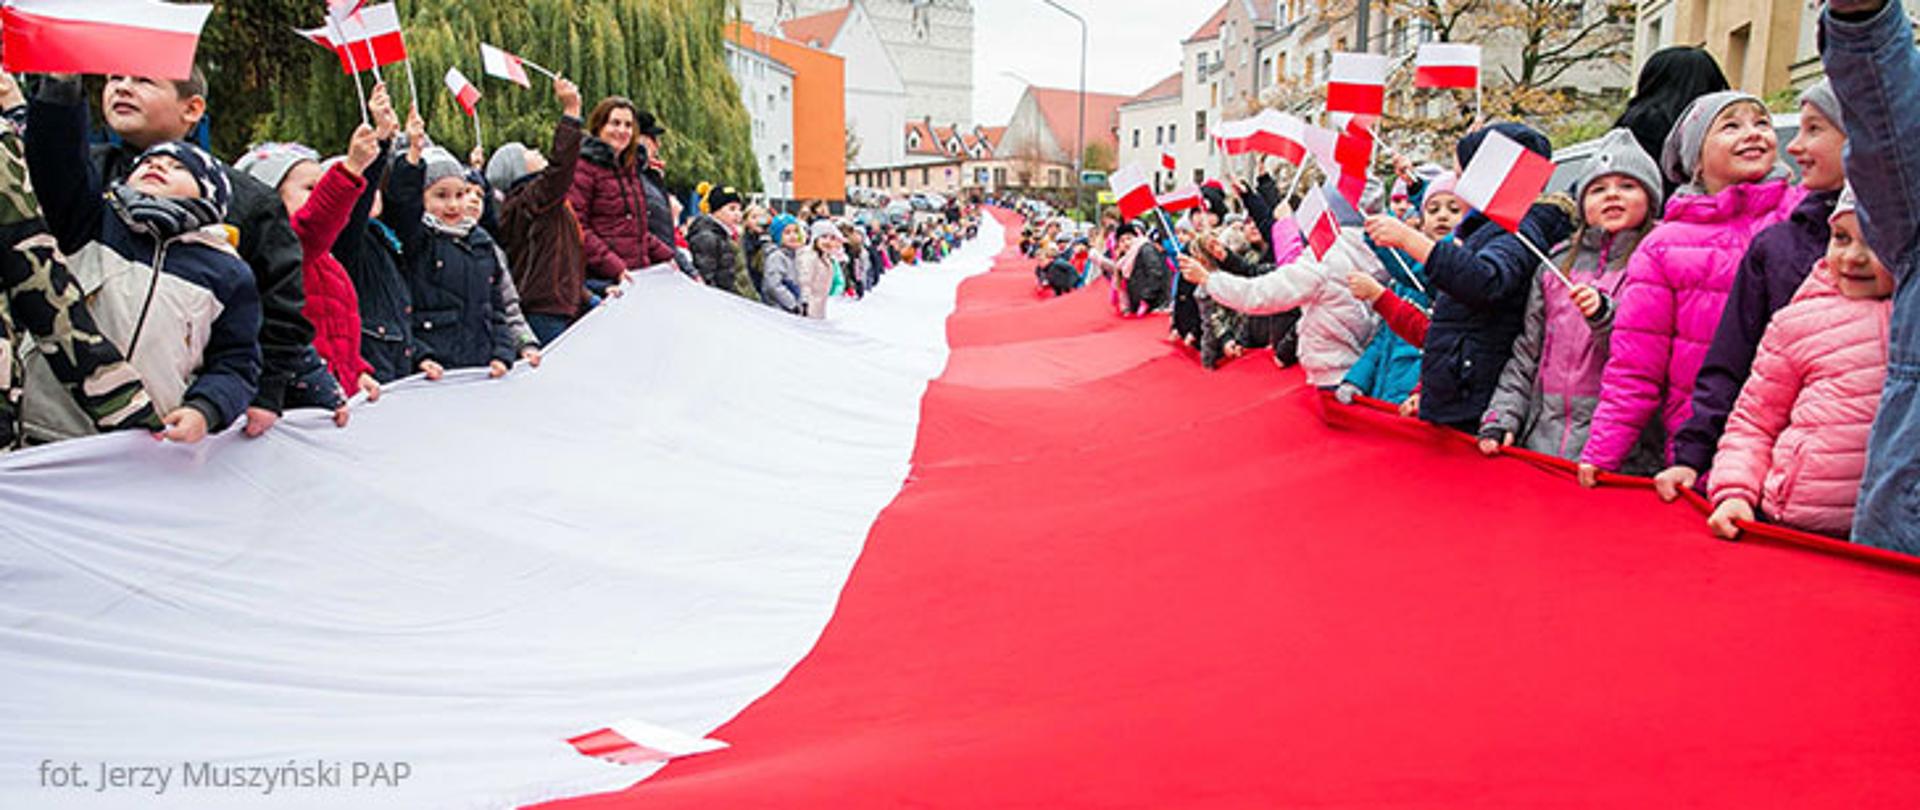 Święto Polonii i Polaków za granicą ustanowiono w dowód uznania historycznego wkładu środowisk emigracyjnych w realizację celów narodowościowych kraju przodków. Wspólne obchody z Dniem Flagi RP mają skłaniać Polaków do refleksji o szczytnych kartach historii Polski.